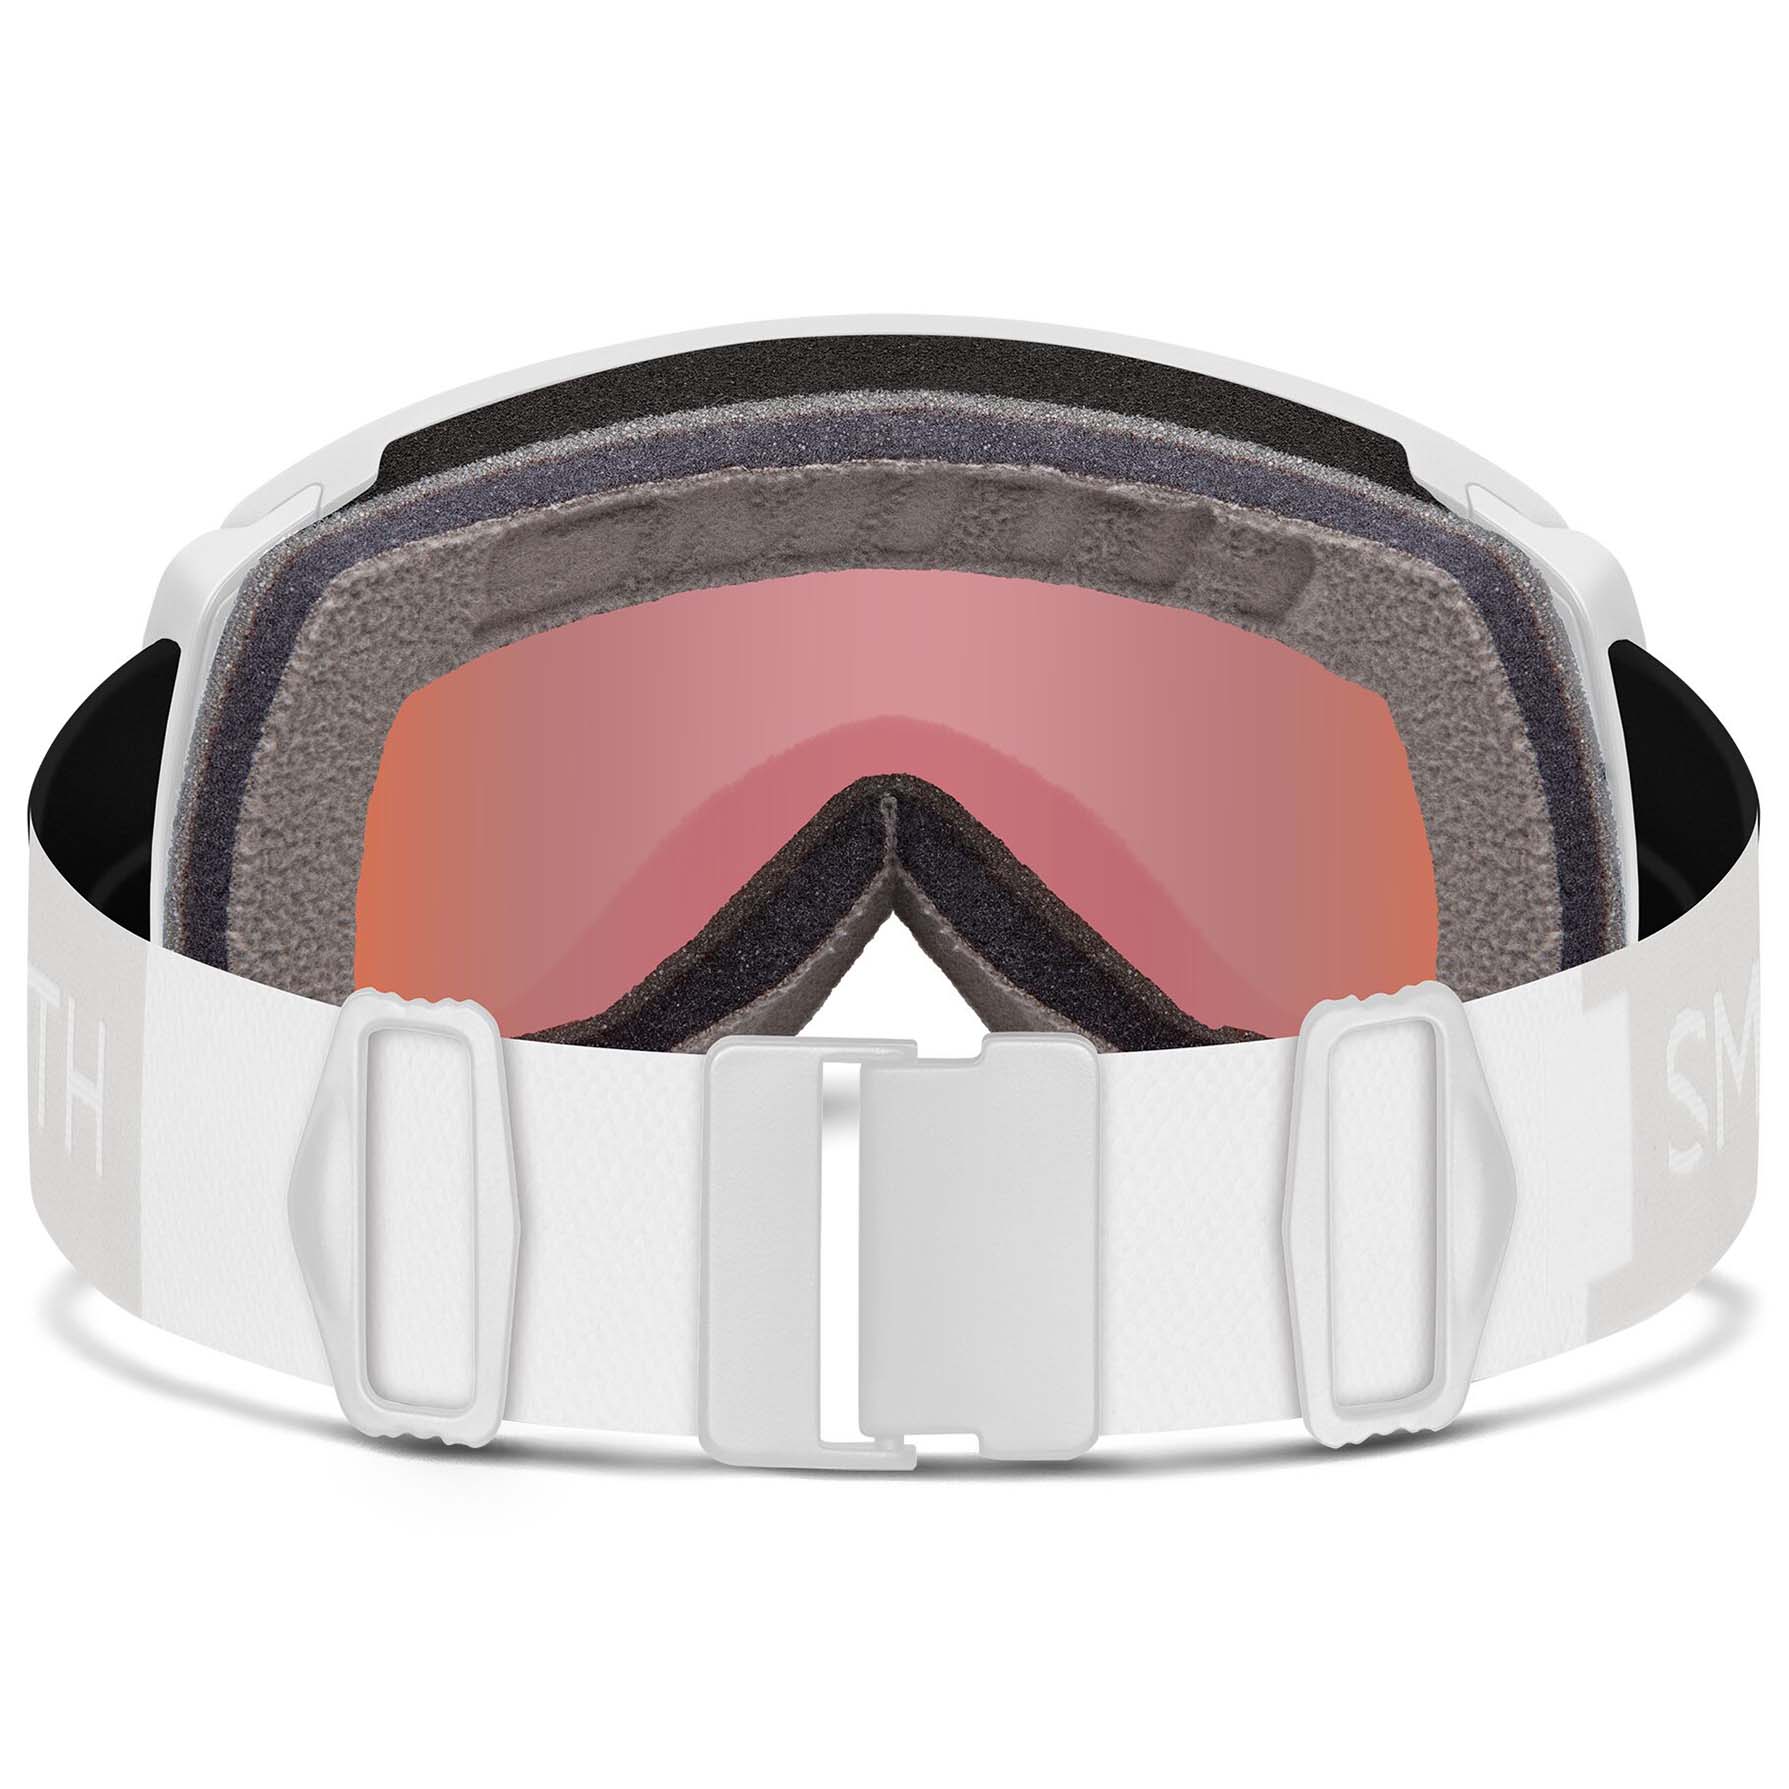 Smith Proxy Photochromic Snowboard/Ski Goggles